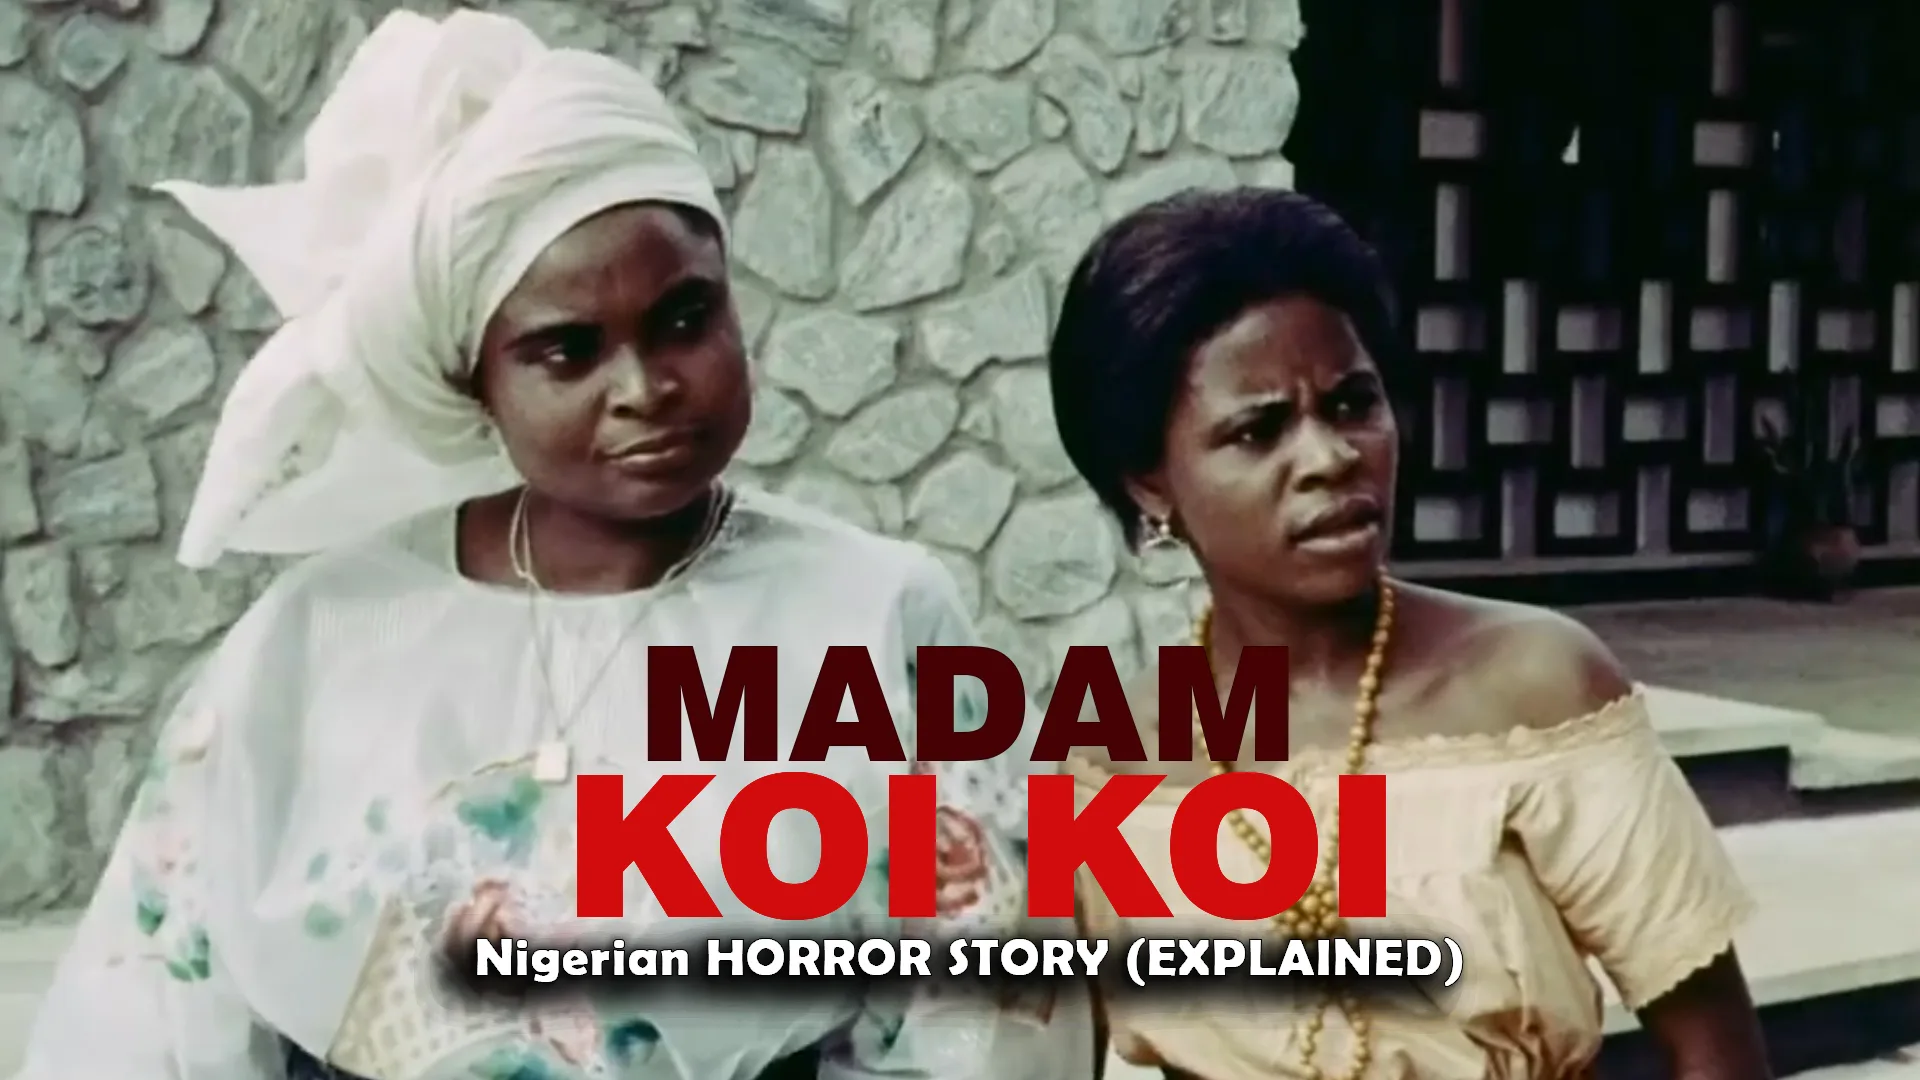 REAL STORY OF MADAM KOI KOI – 1990’S REAL STORY